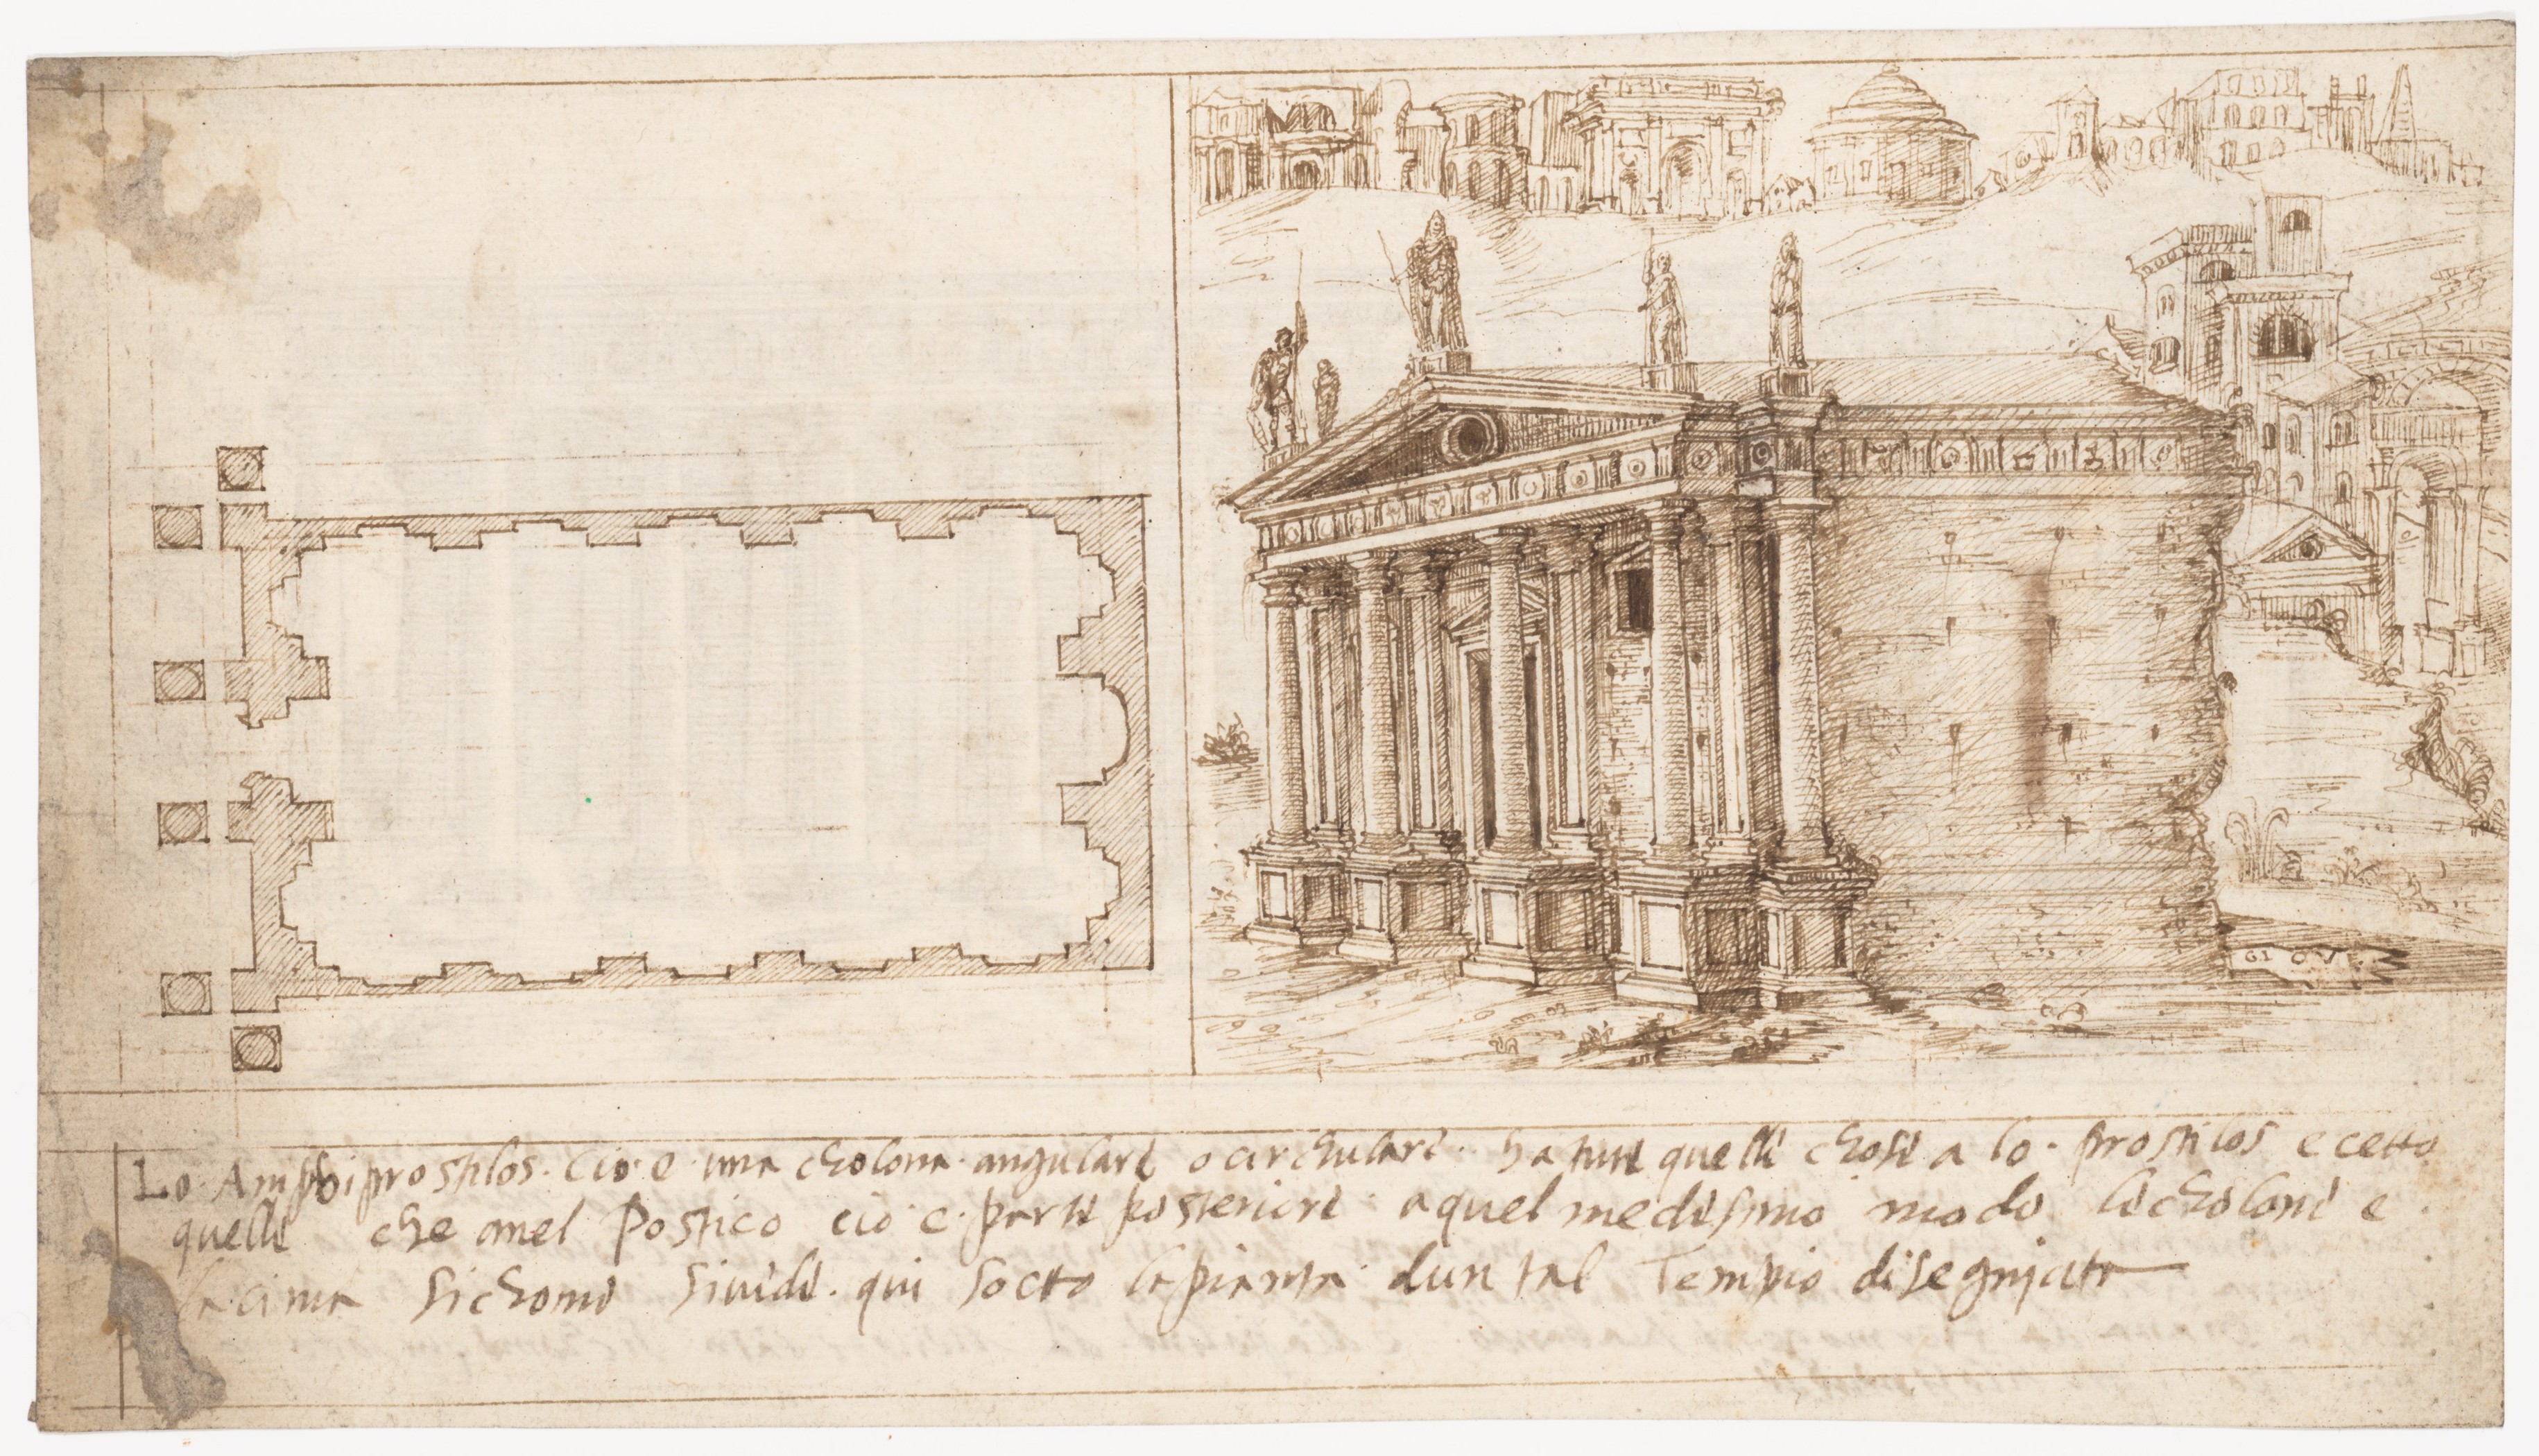 在这页的右边有一幅罗马建筑结构的图画。